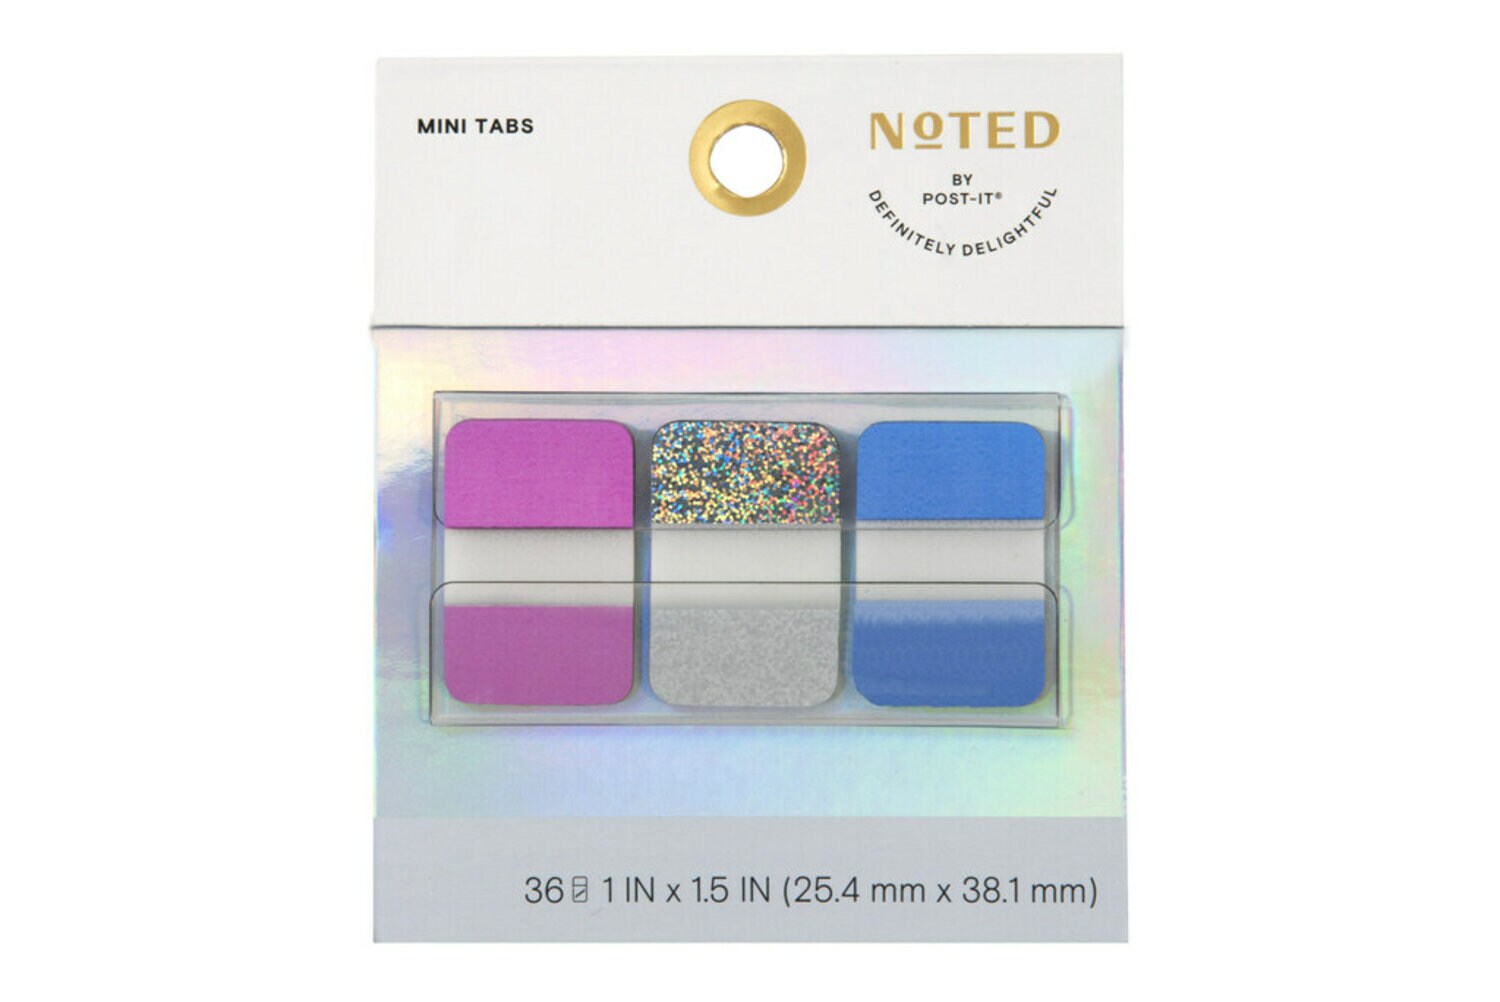 7100297445 - Post-it Mini Tabs NTD7-FOIL, 1 in x 1.5 in (25.4 mm x 38.1 mm)